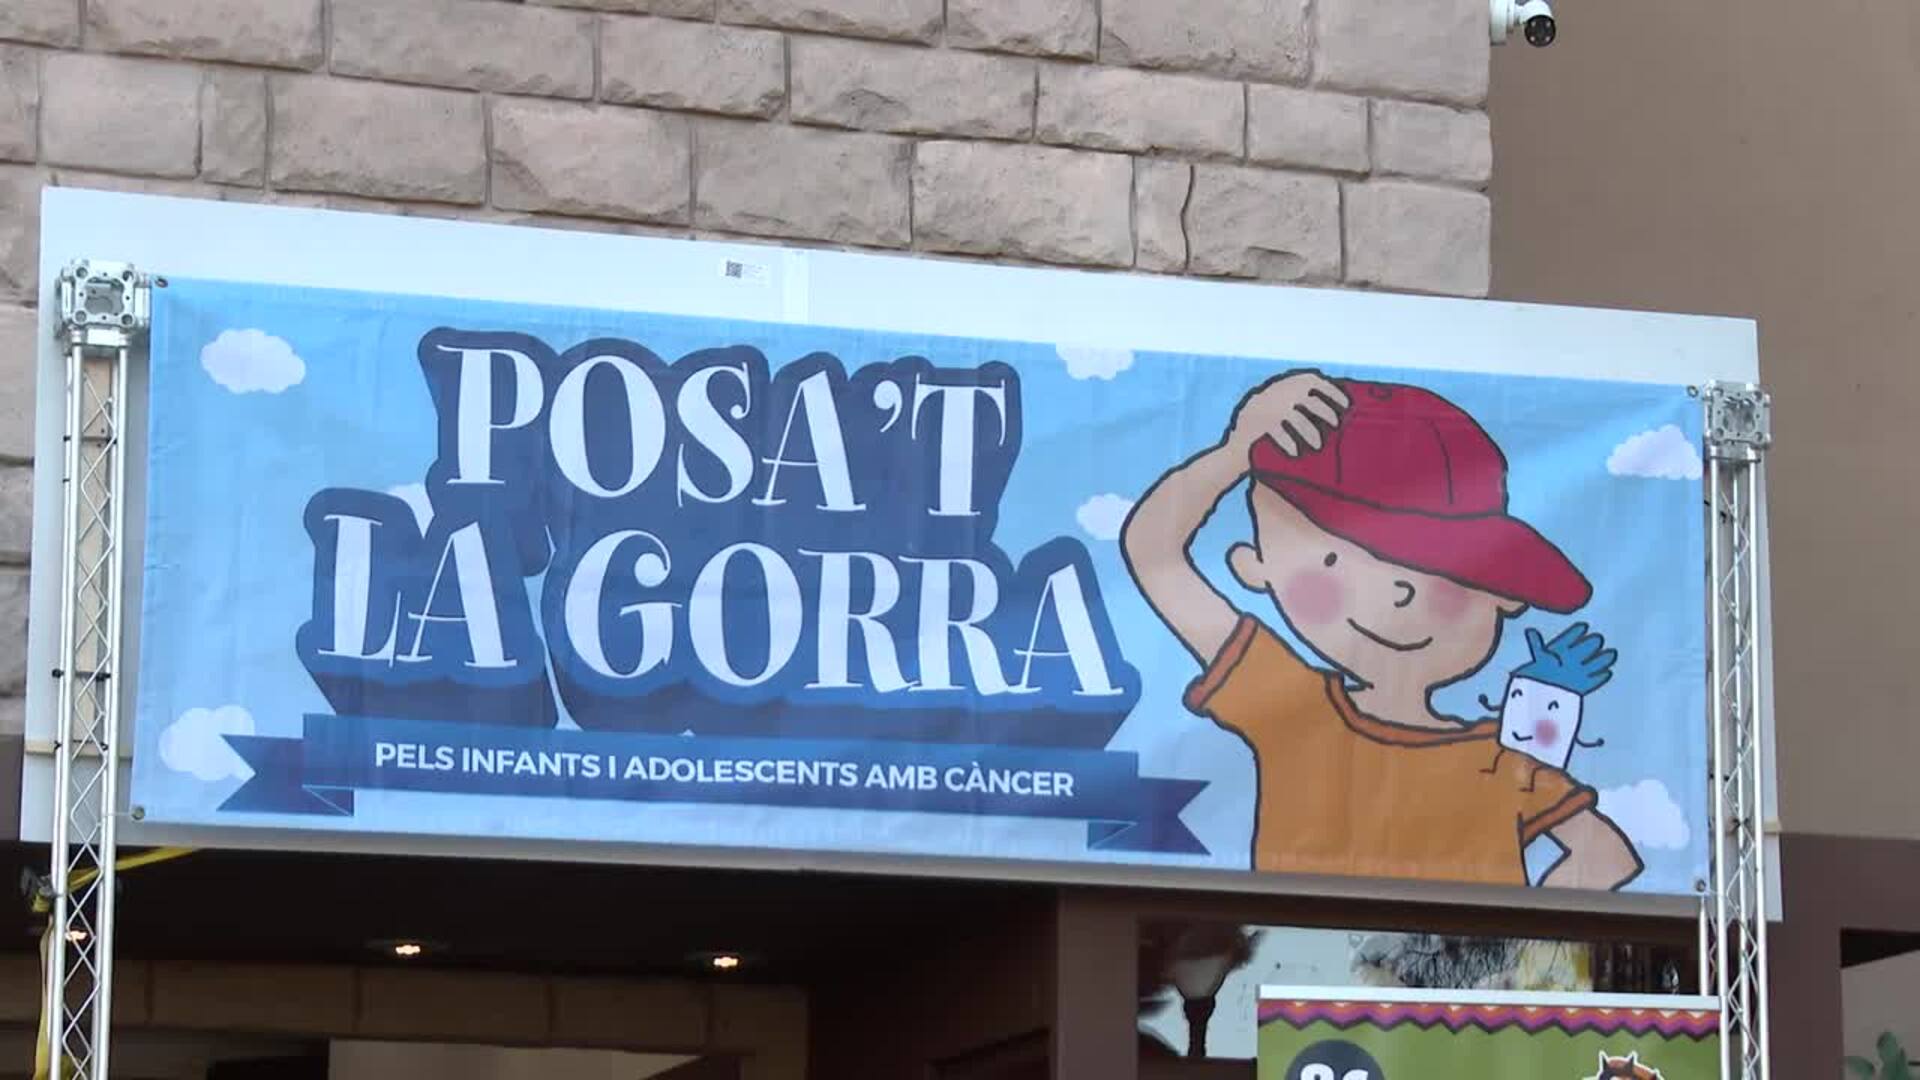 'Posa't la gorra', una fiesta solidaria para dar apoyo a los menores con cáncer